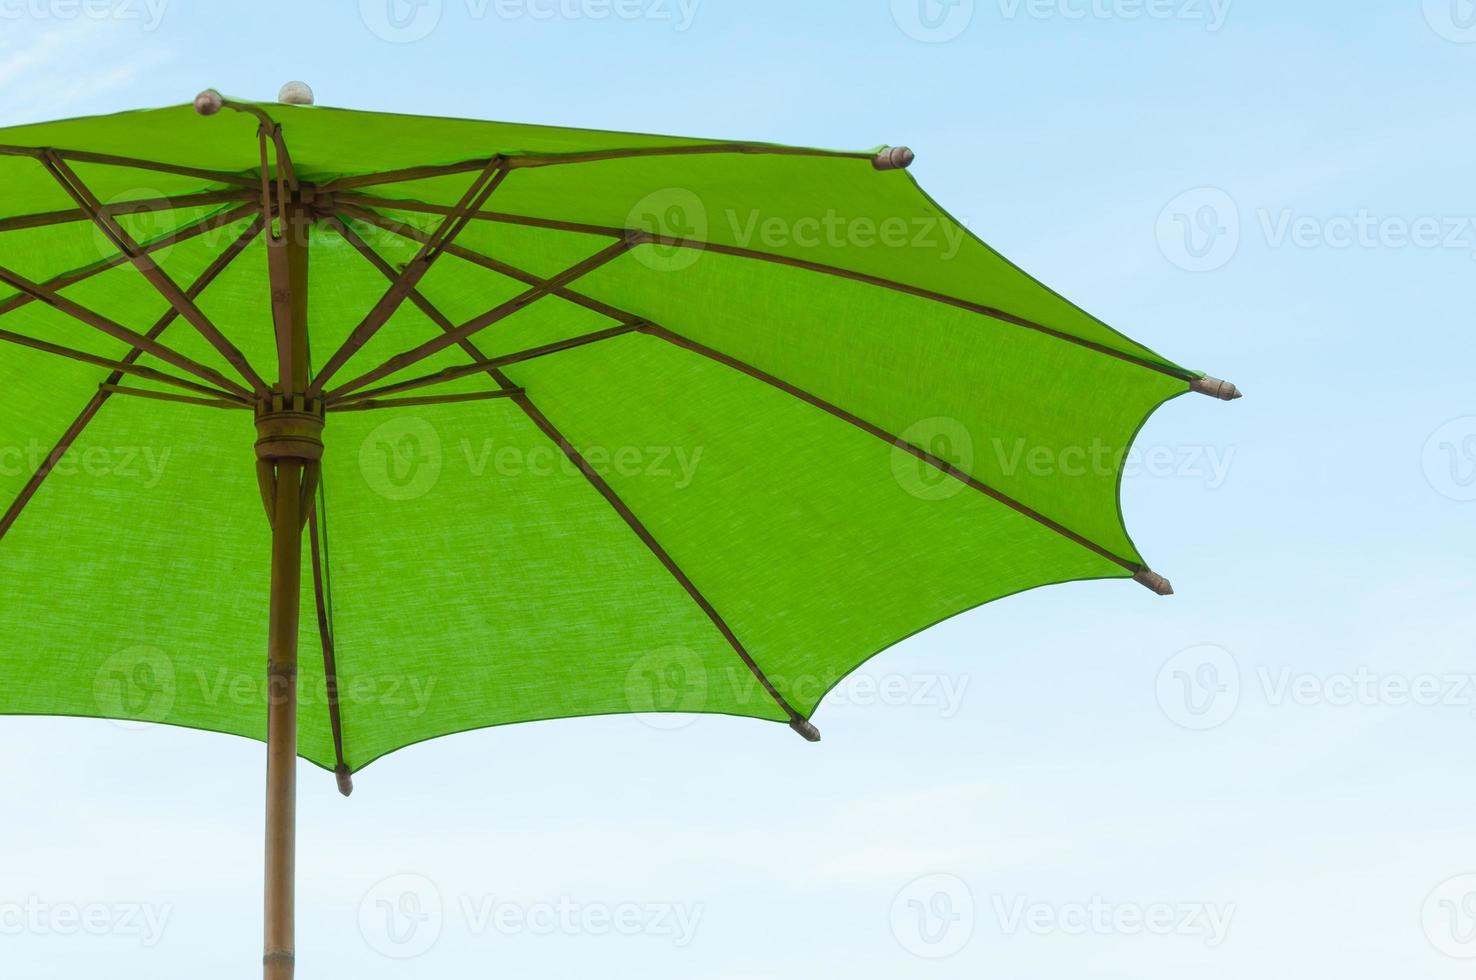 traditionell asiatisk papper och bambu paraply med en avrundad hantera på blå himmel foto